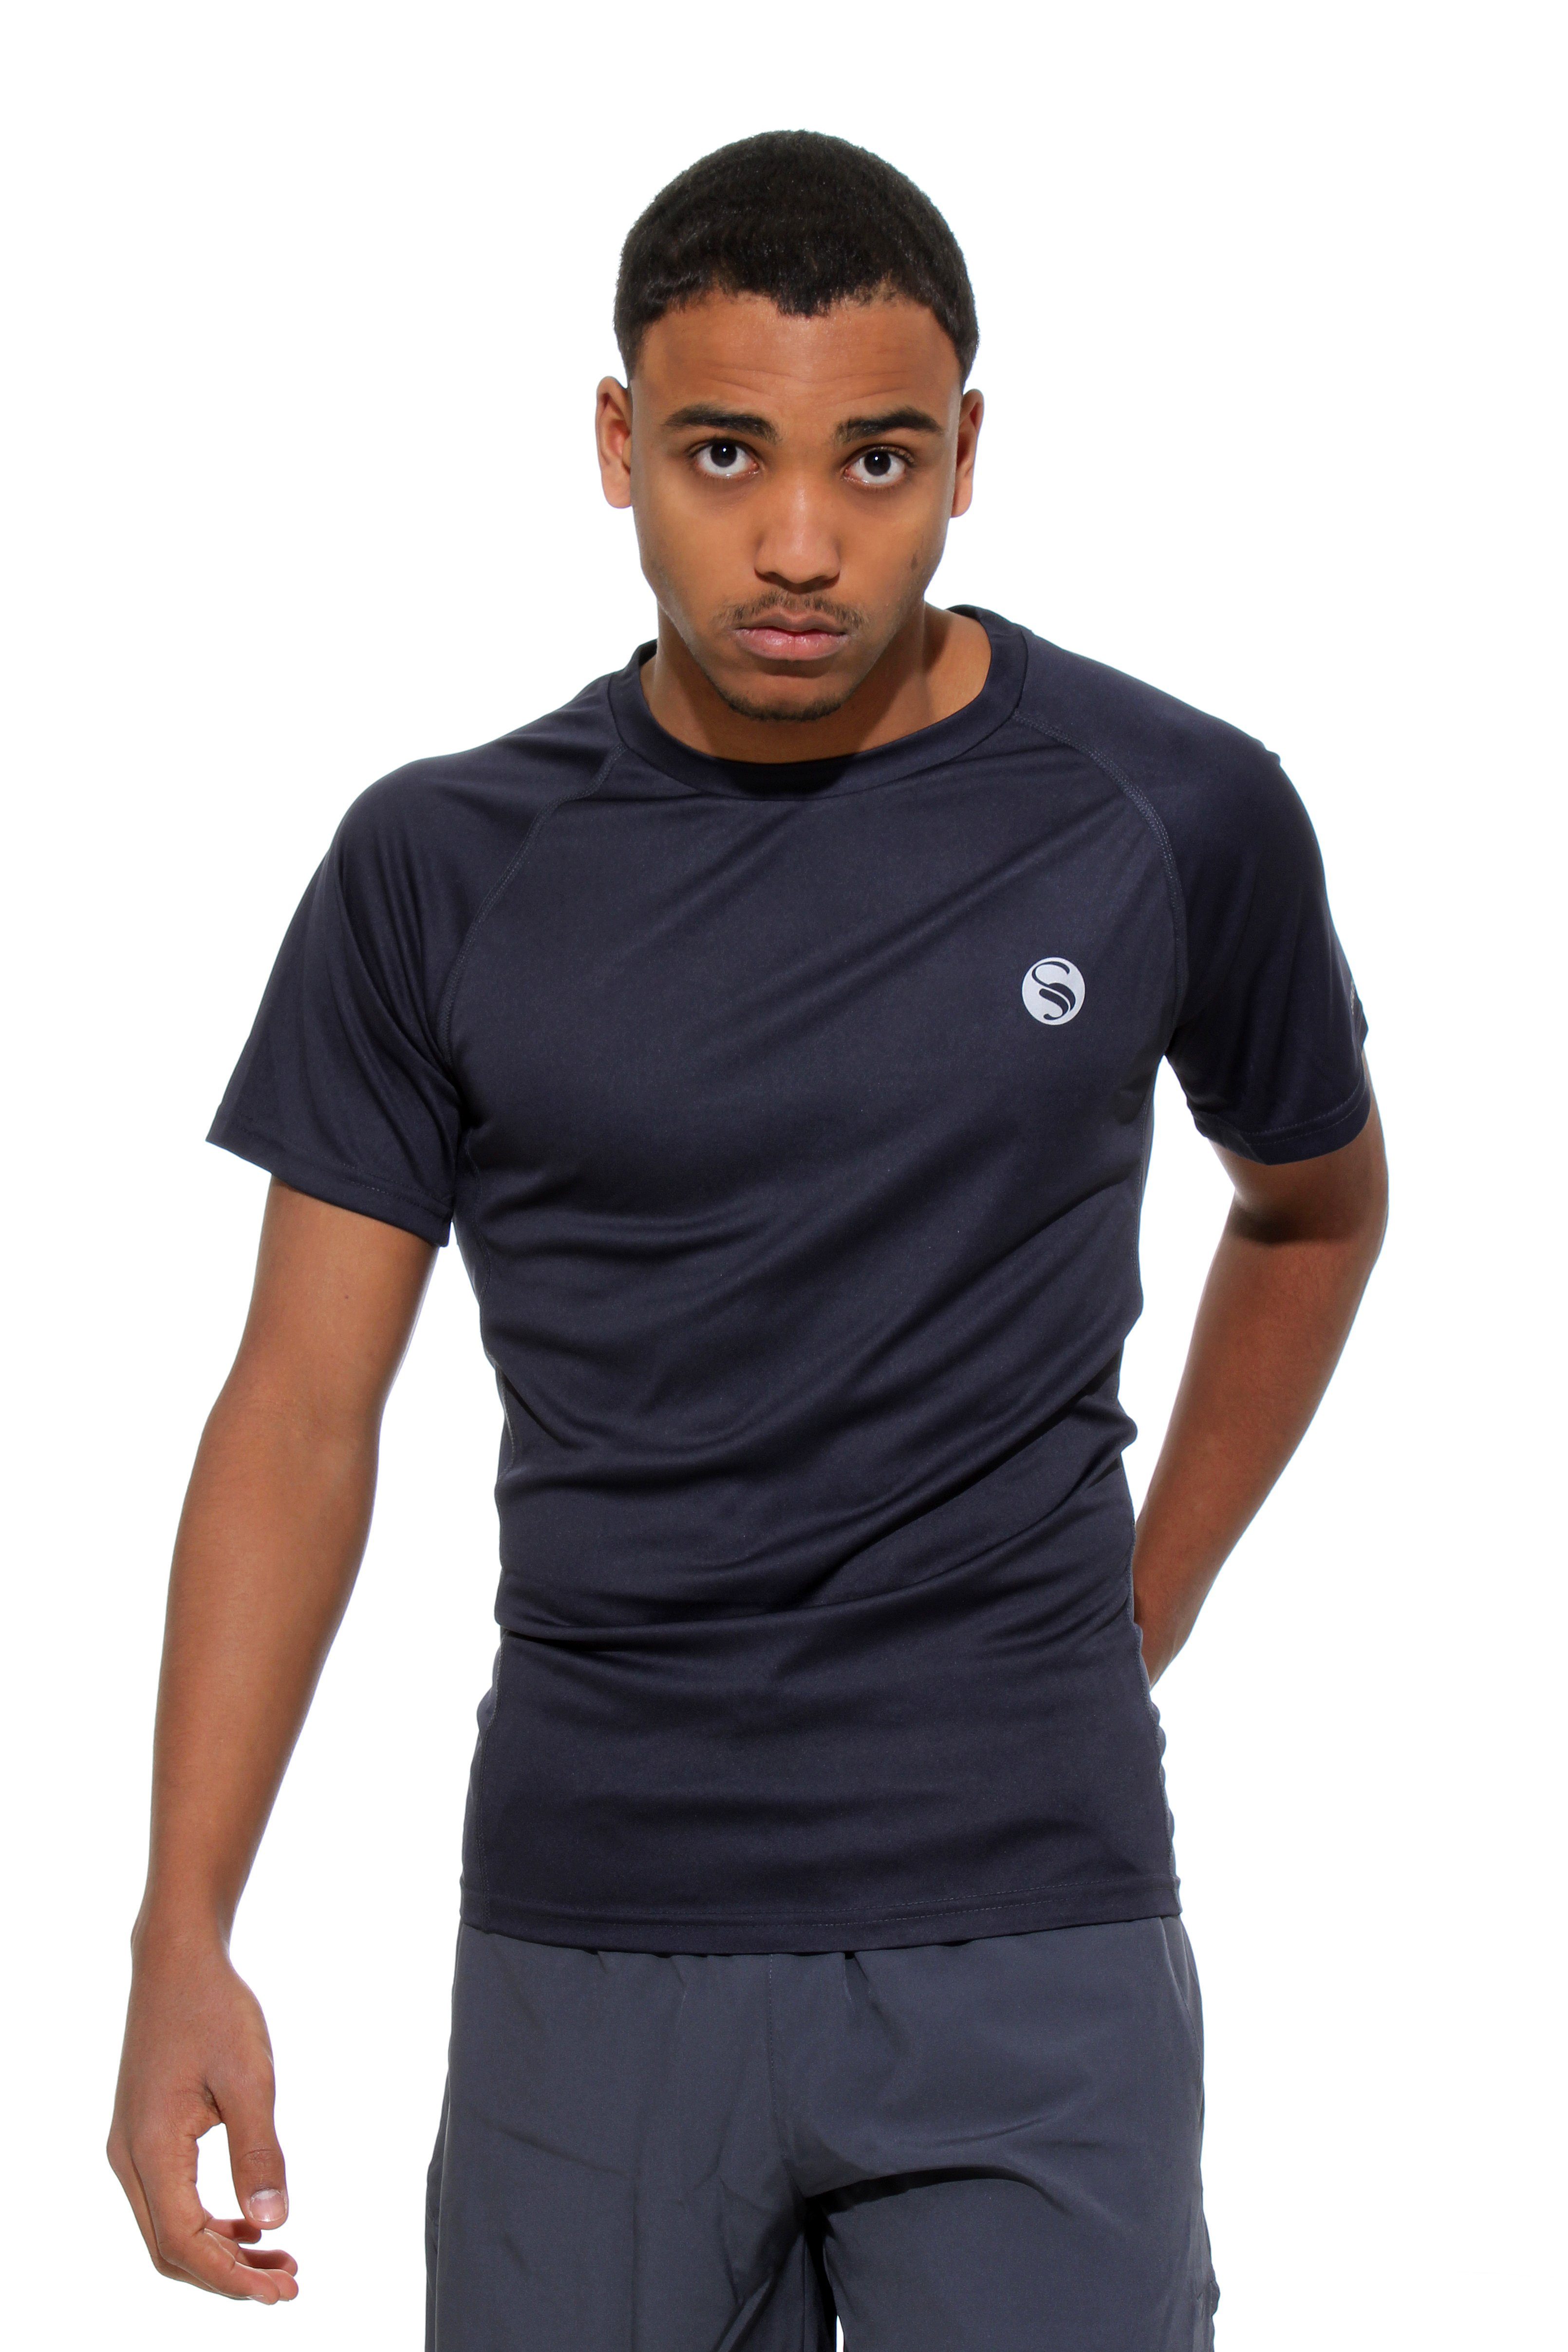 "Reflect", Sportshirt, Stark T-Shirt Grau Funktionsshirt Fitness Funktionsshirt Soul® Kurzarm mit Mesh-Einsätzen seitlichen